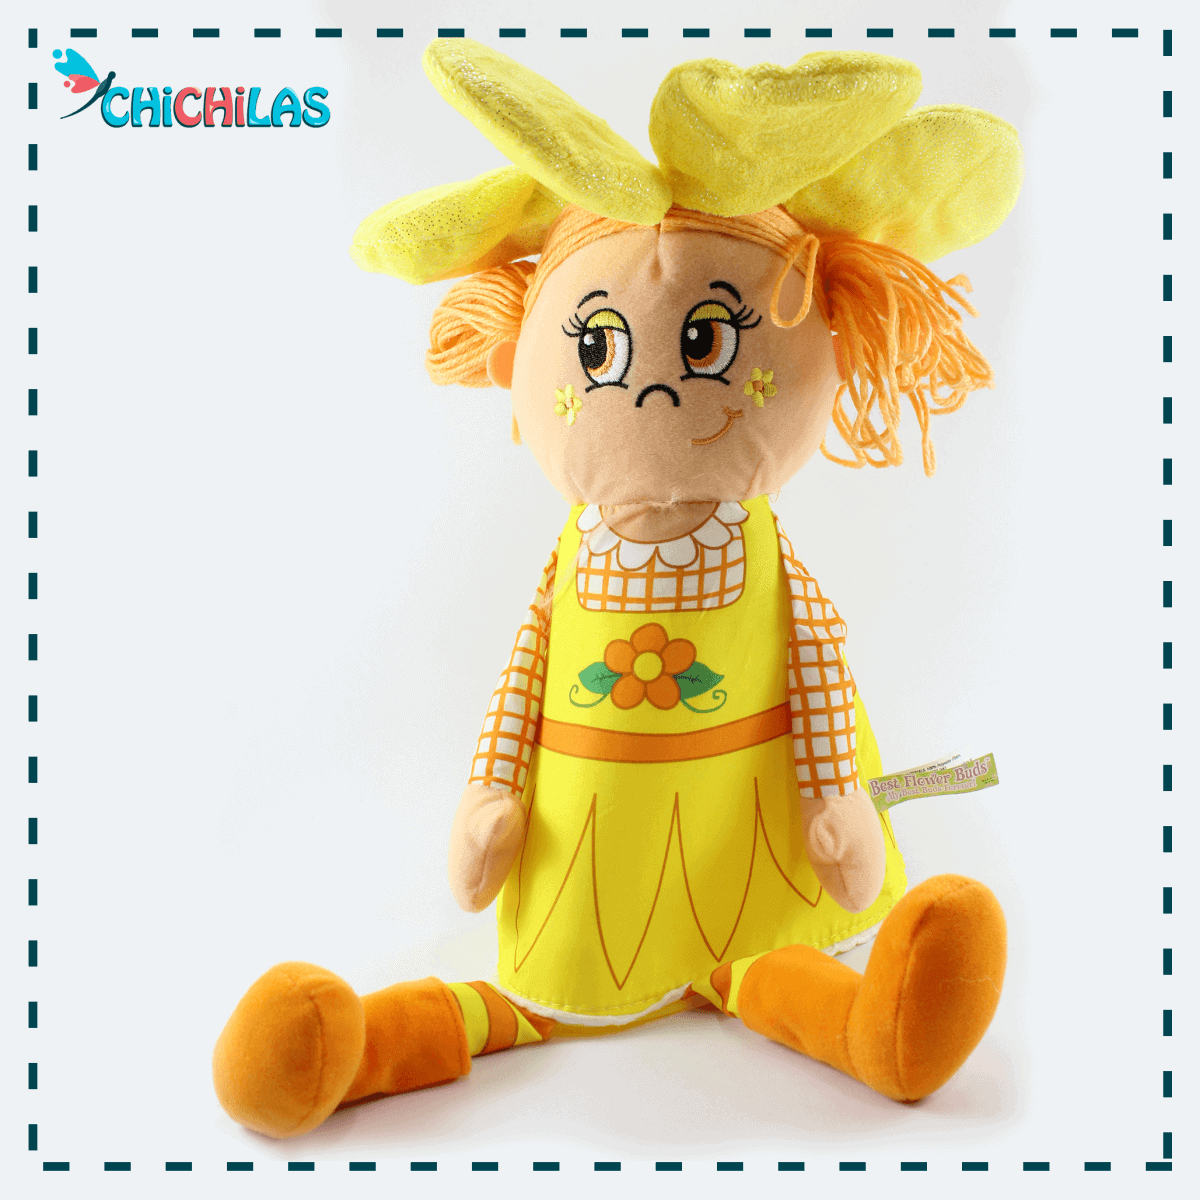 عروسک دختر گلدونی - عروسک دختر گلدانی - عروسک گلدانی - عروسک خارجی - عروسک پولیشی - چیچیلاس - عروسک ولنتاین - خرید عروسک آنلاین